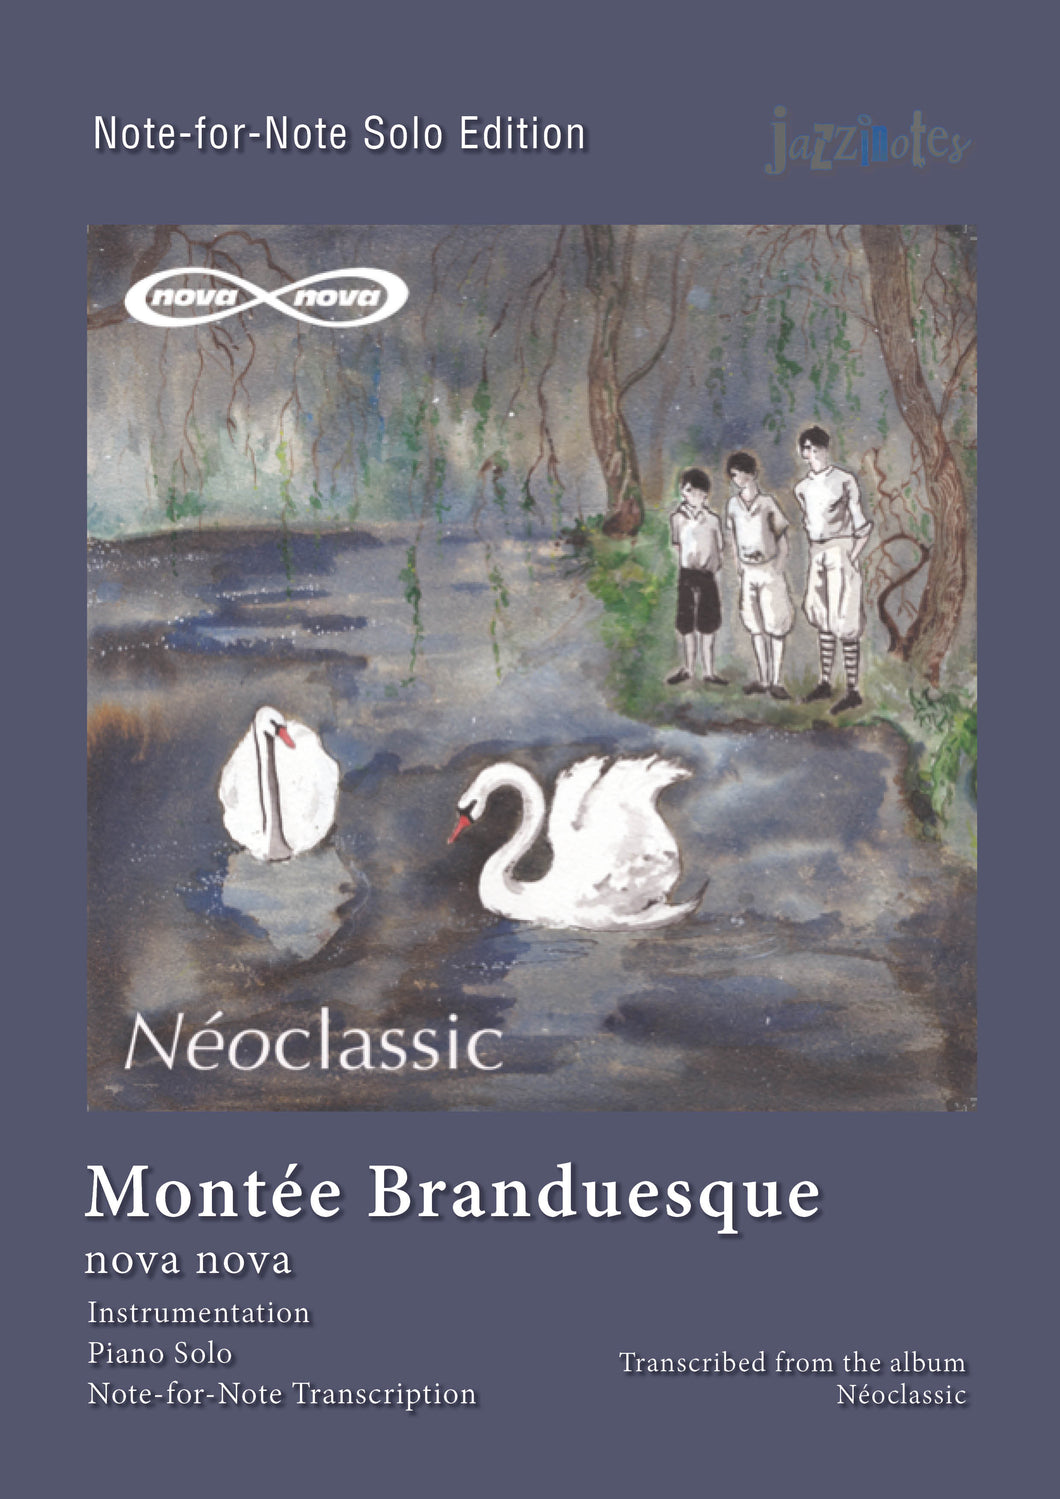 Nova Nova: Montée Branduesque - Sheet Music Download